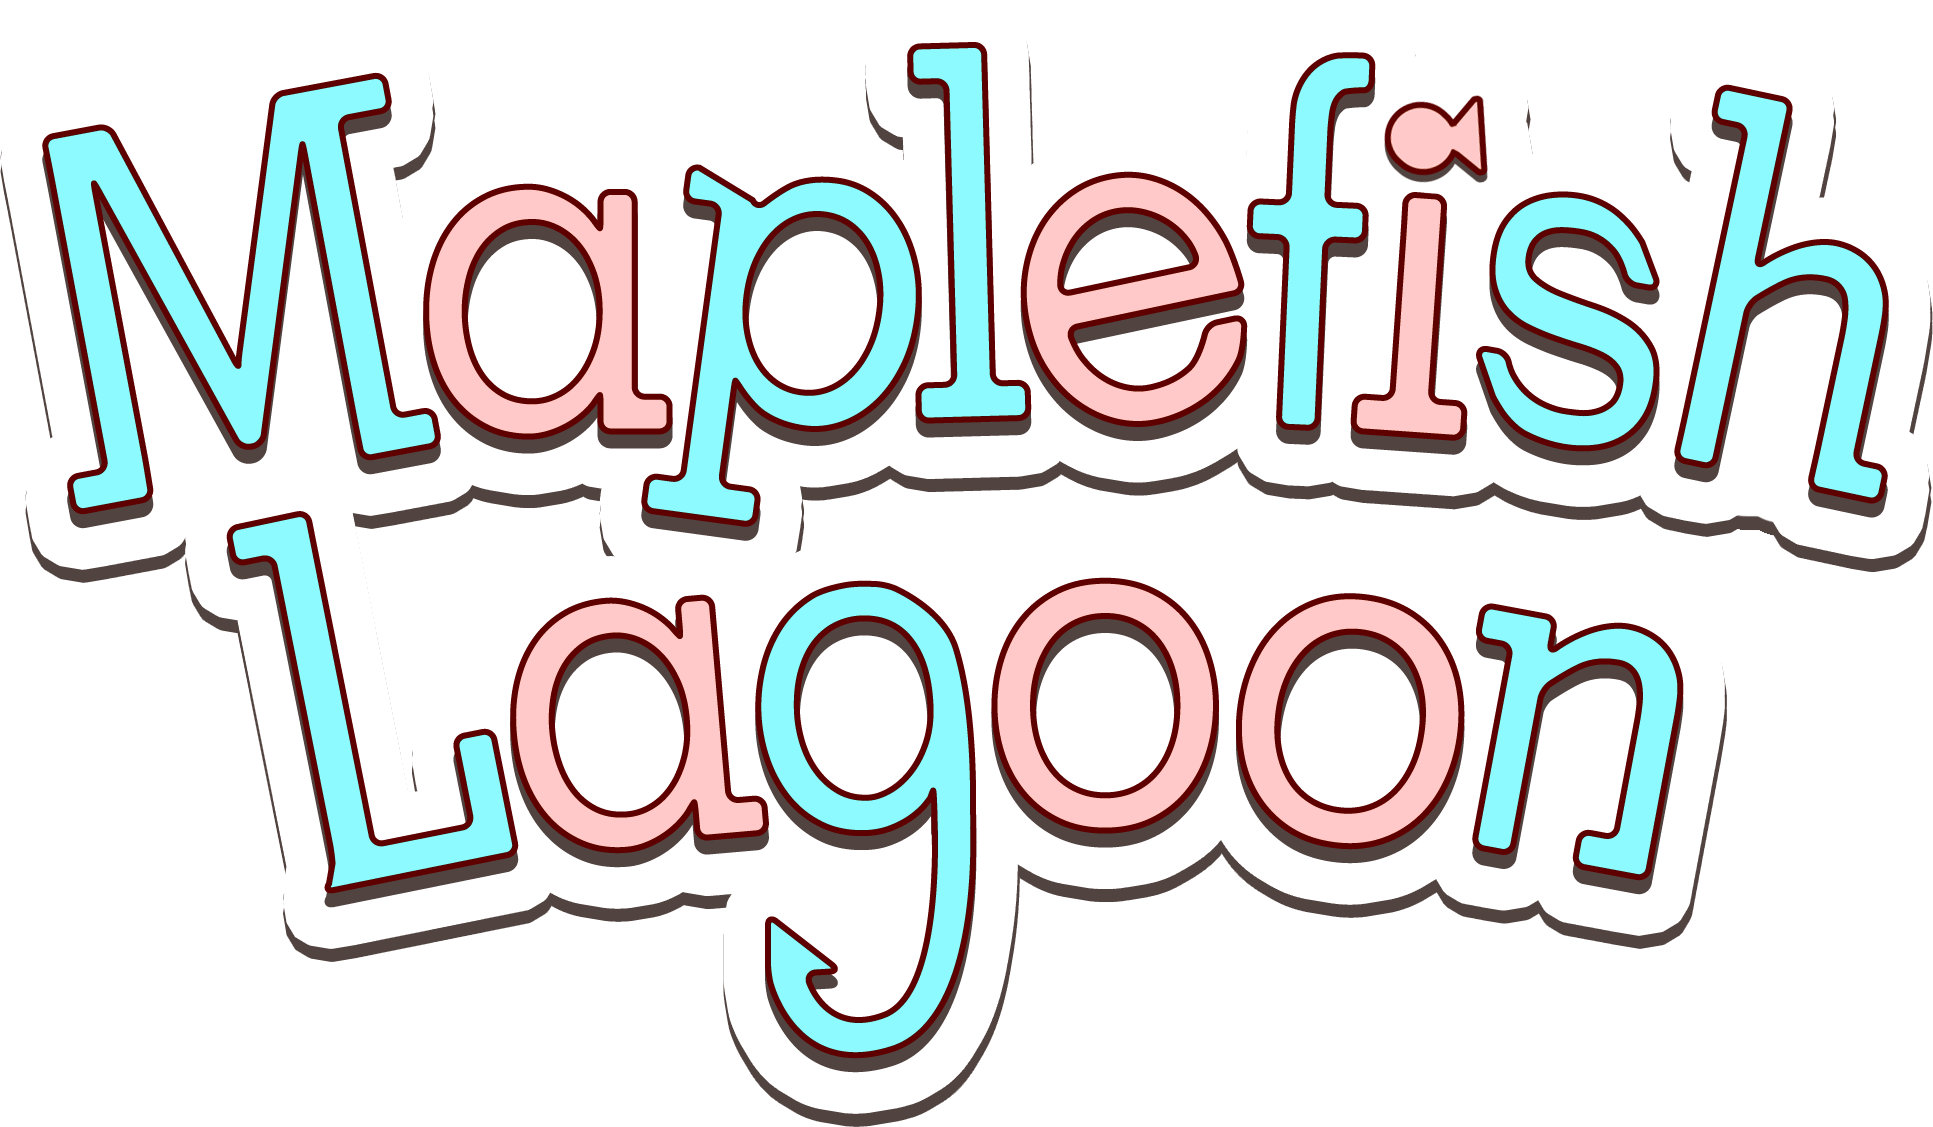 Maplefish Lagoon